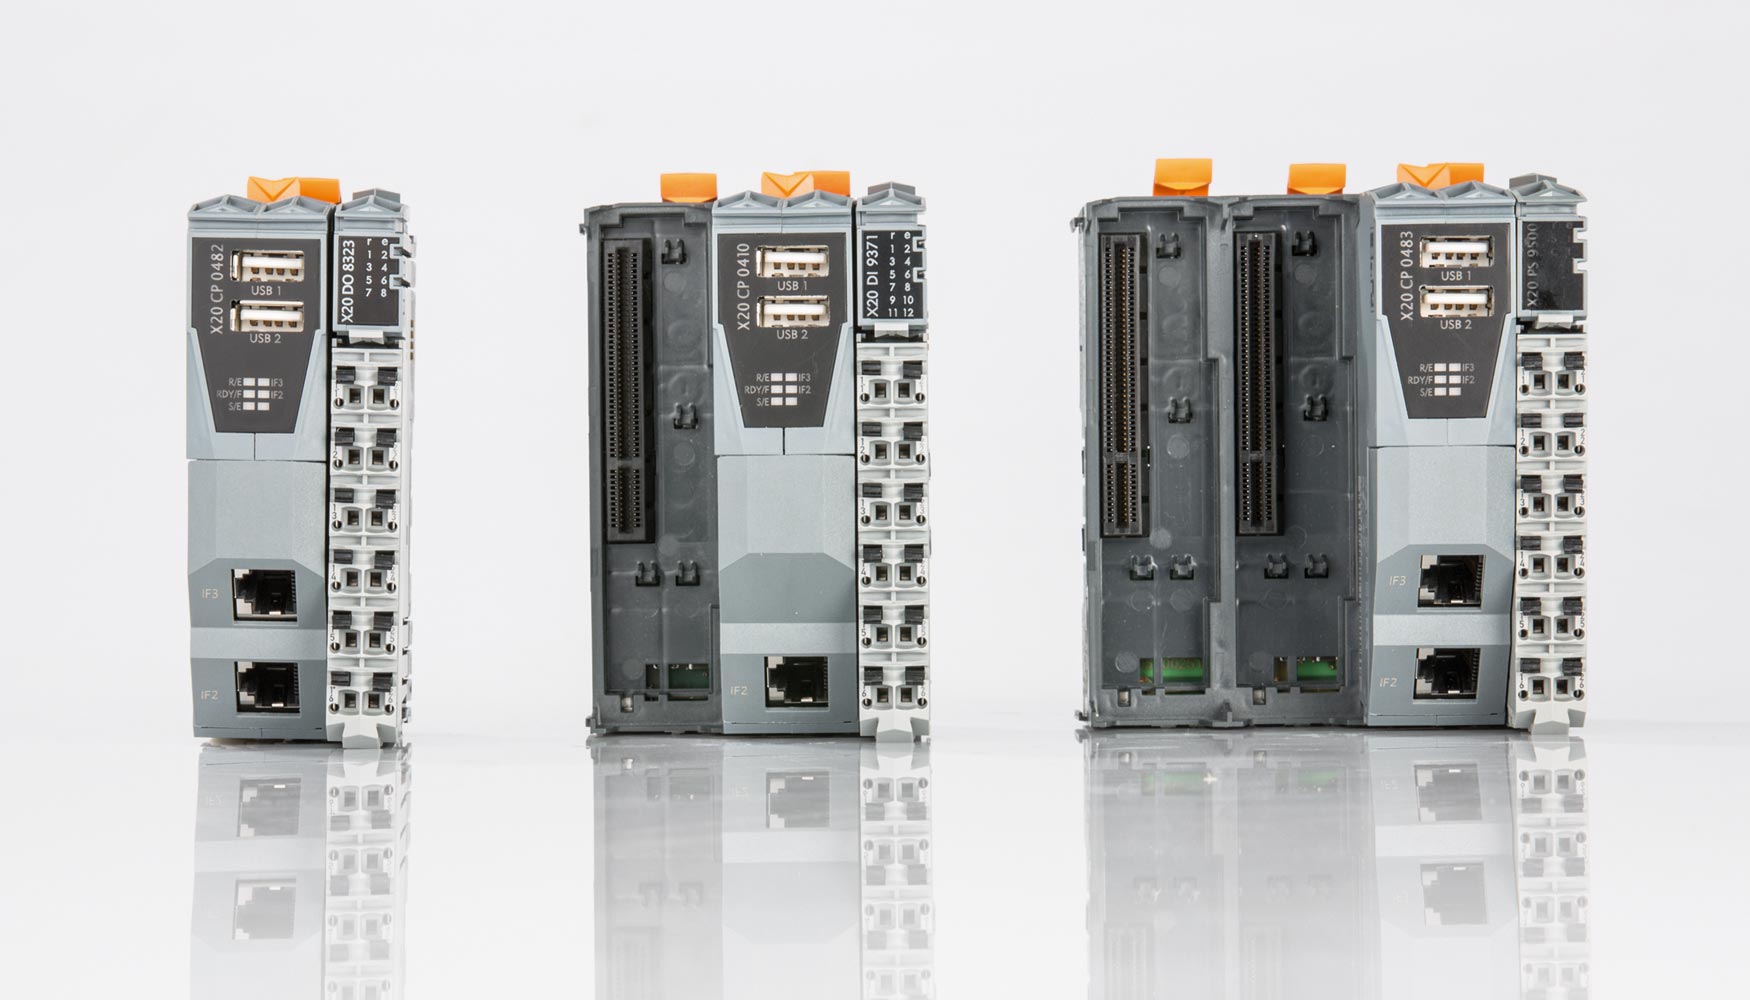 Los nuevos controladores Compact-S de B&R tienen una estructura modular ampliable y estn disponibles en 5 modalidades de rendimiento diferentes...